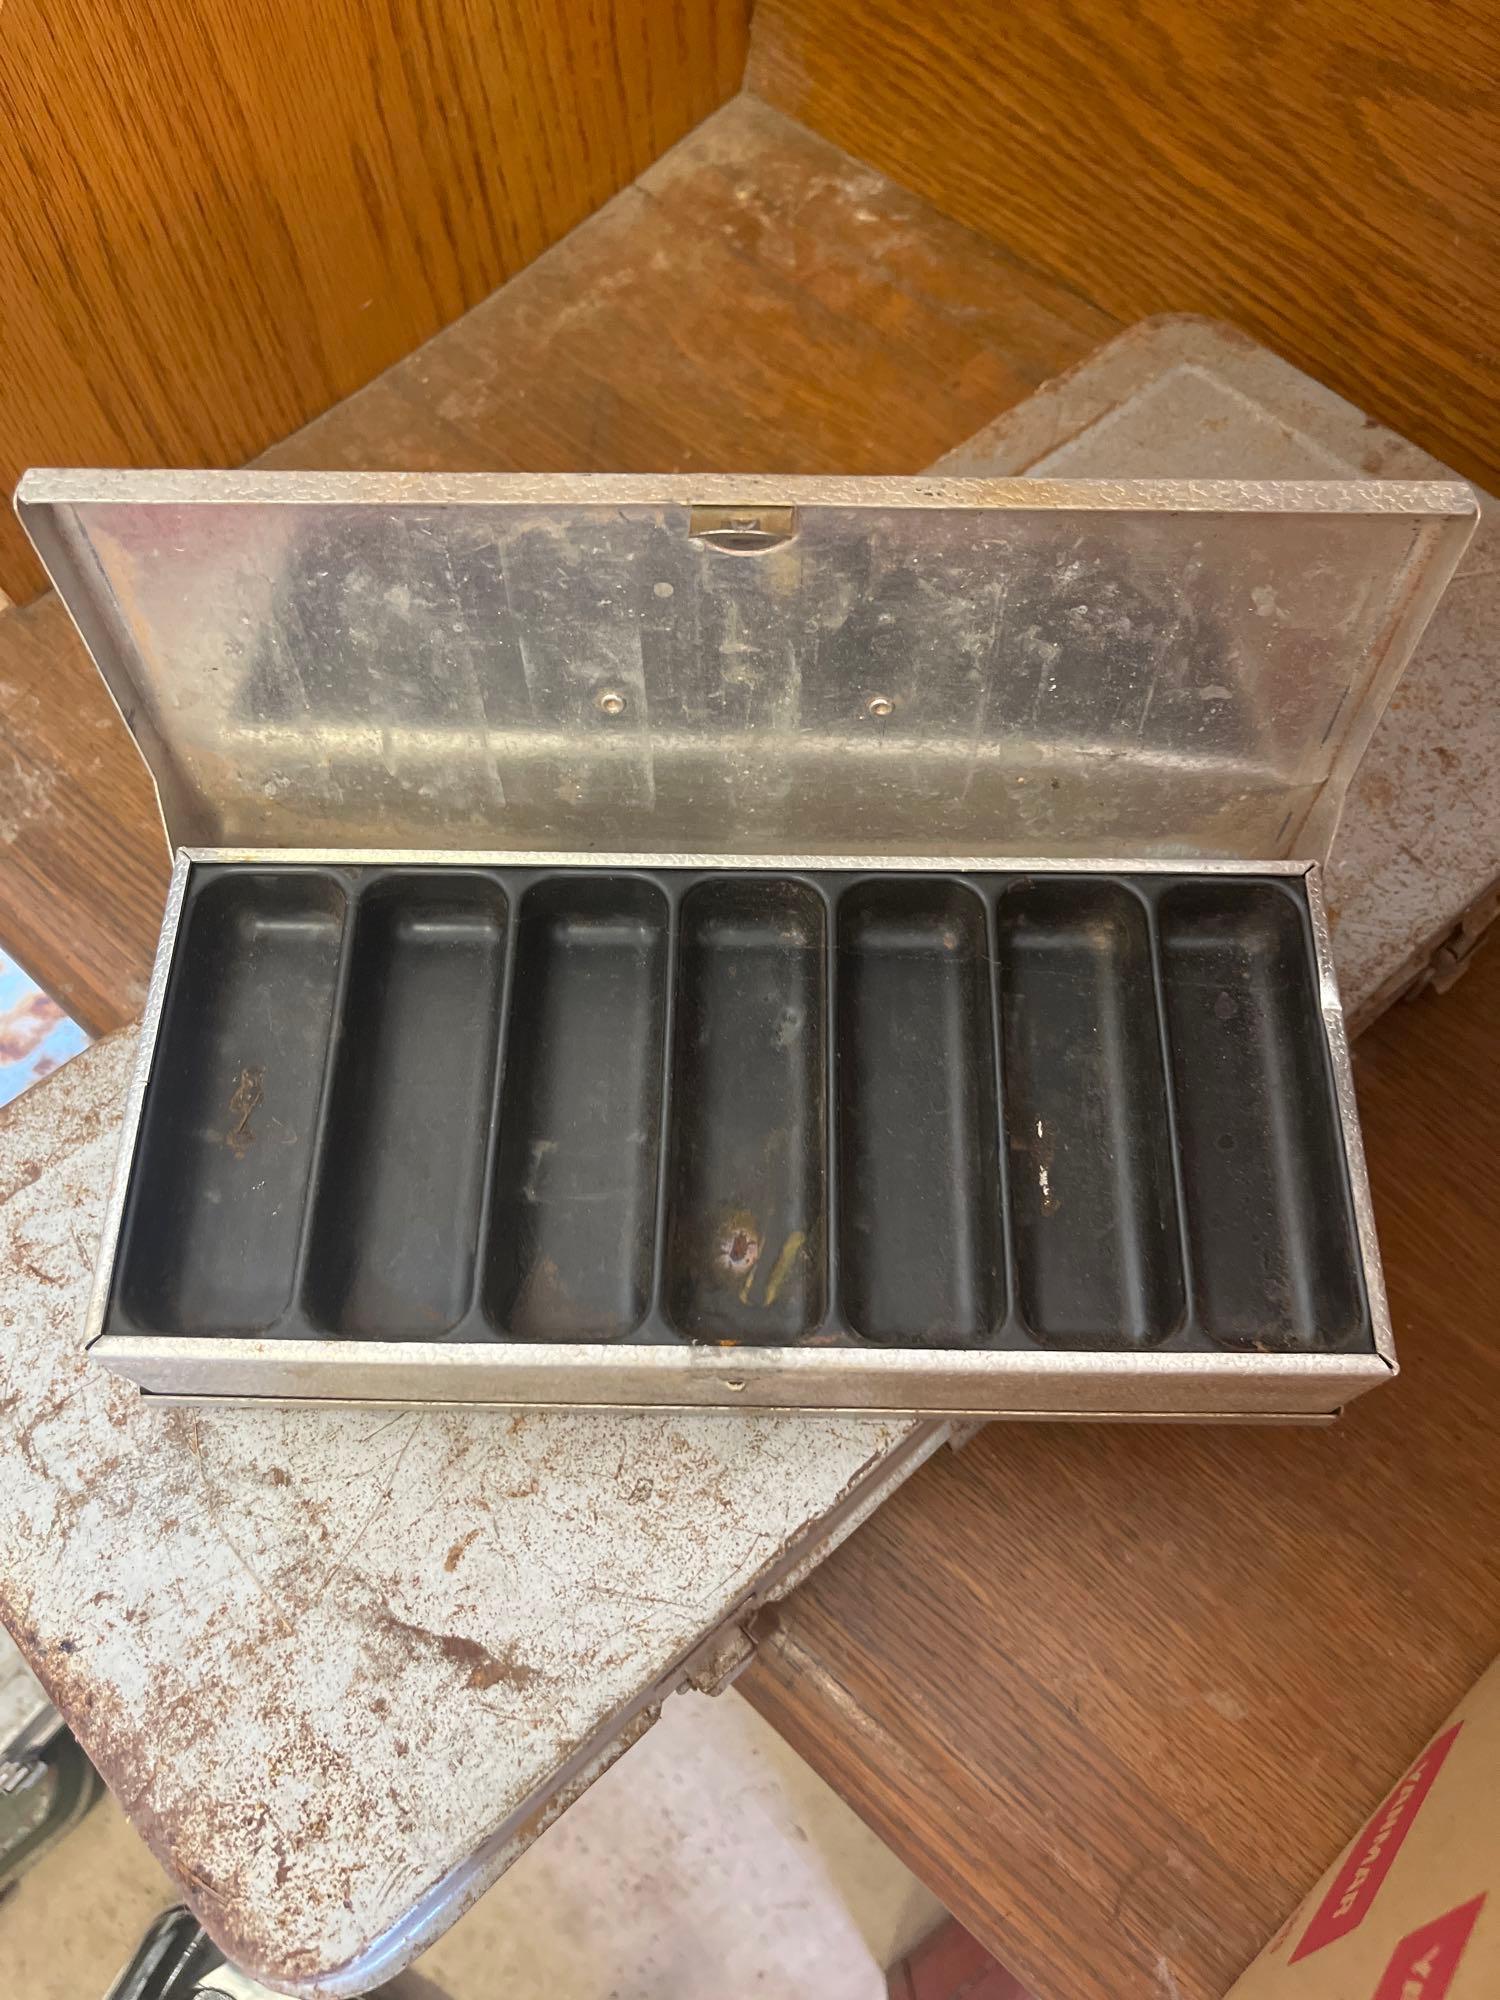 empty tool cases